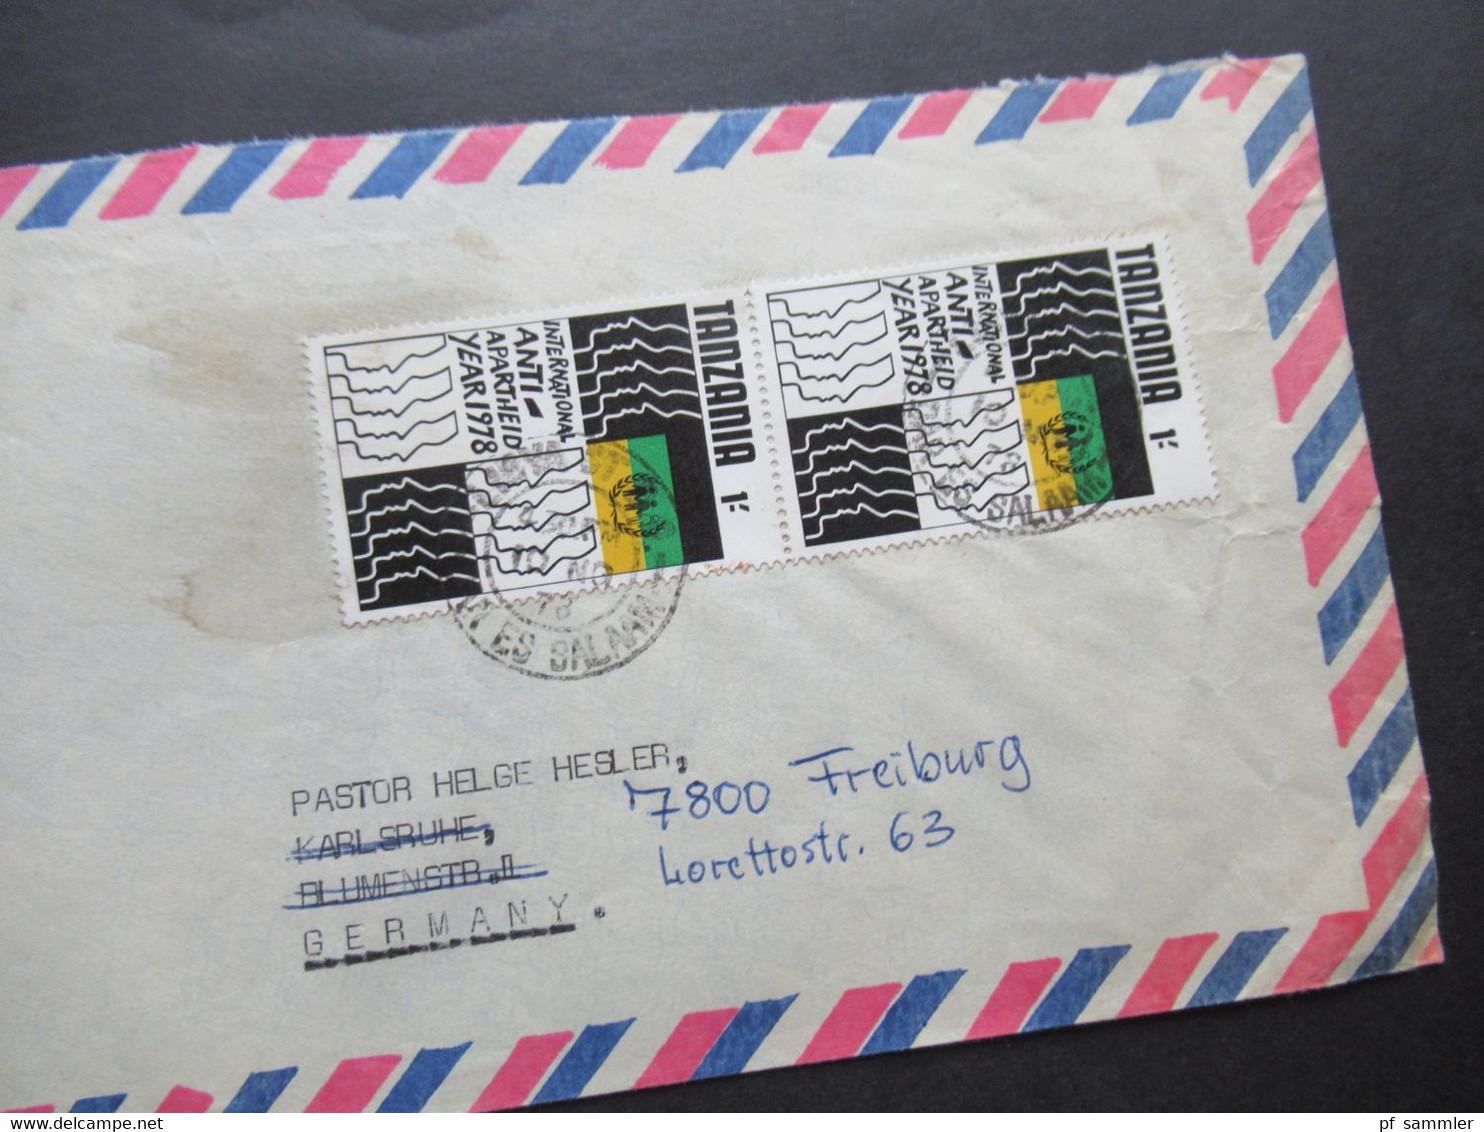 Afrika Tanzania Belegeposten 5 Stück 1970er Jahre / schöne Frankaturen / Air Mail / Luftpost